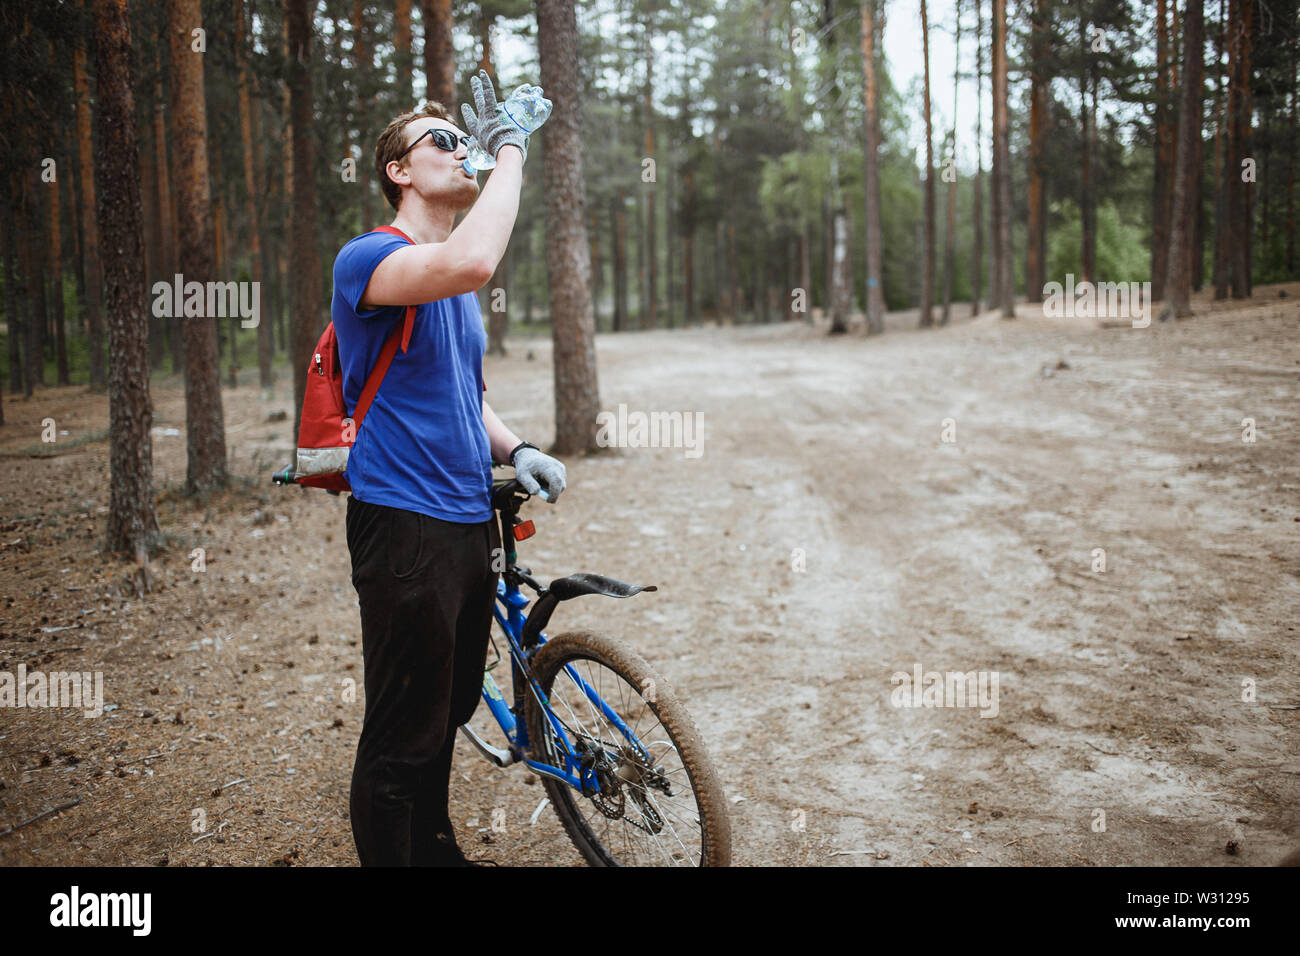 Hübscher junger Mann amateurl cyclistdrinking Wasser aus der Flasche, Fahrrad genießen in einem Pinienwald. Erholung der Sportler. Stockfoto